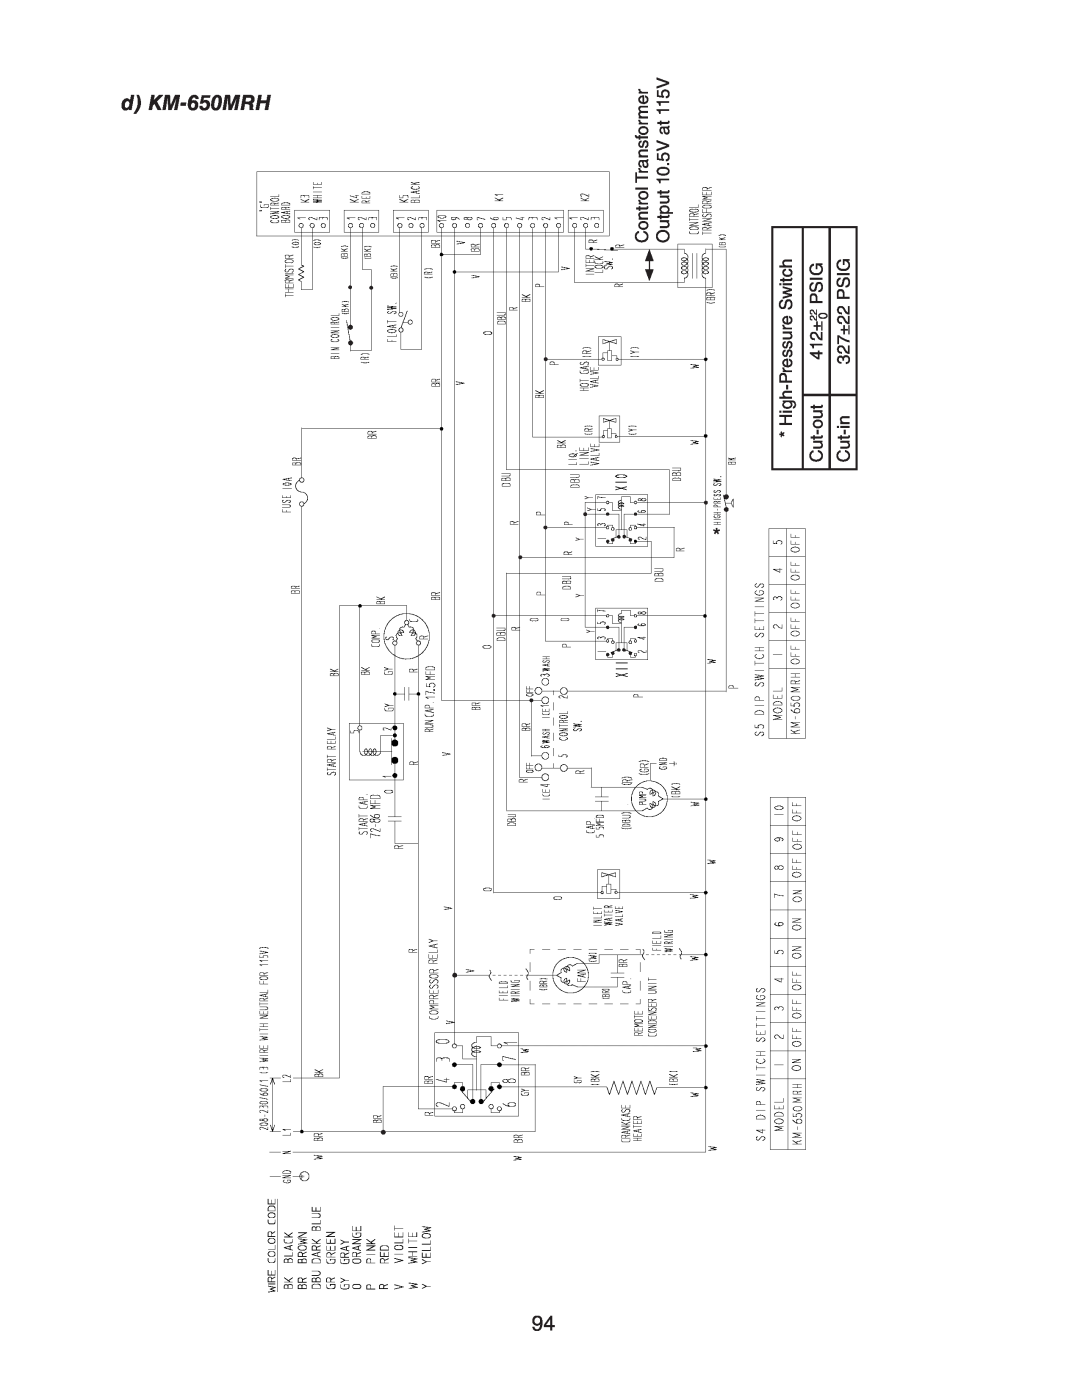 Hoshizaki MRH KM-901MAH, MWH d KM-650MRH, Control Transformer, Output 10.5V at, High-Pressure Switch, Cut-out, 412±, Psig 